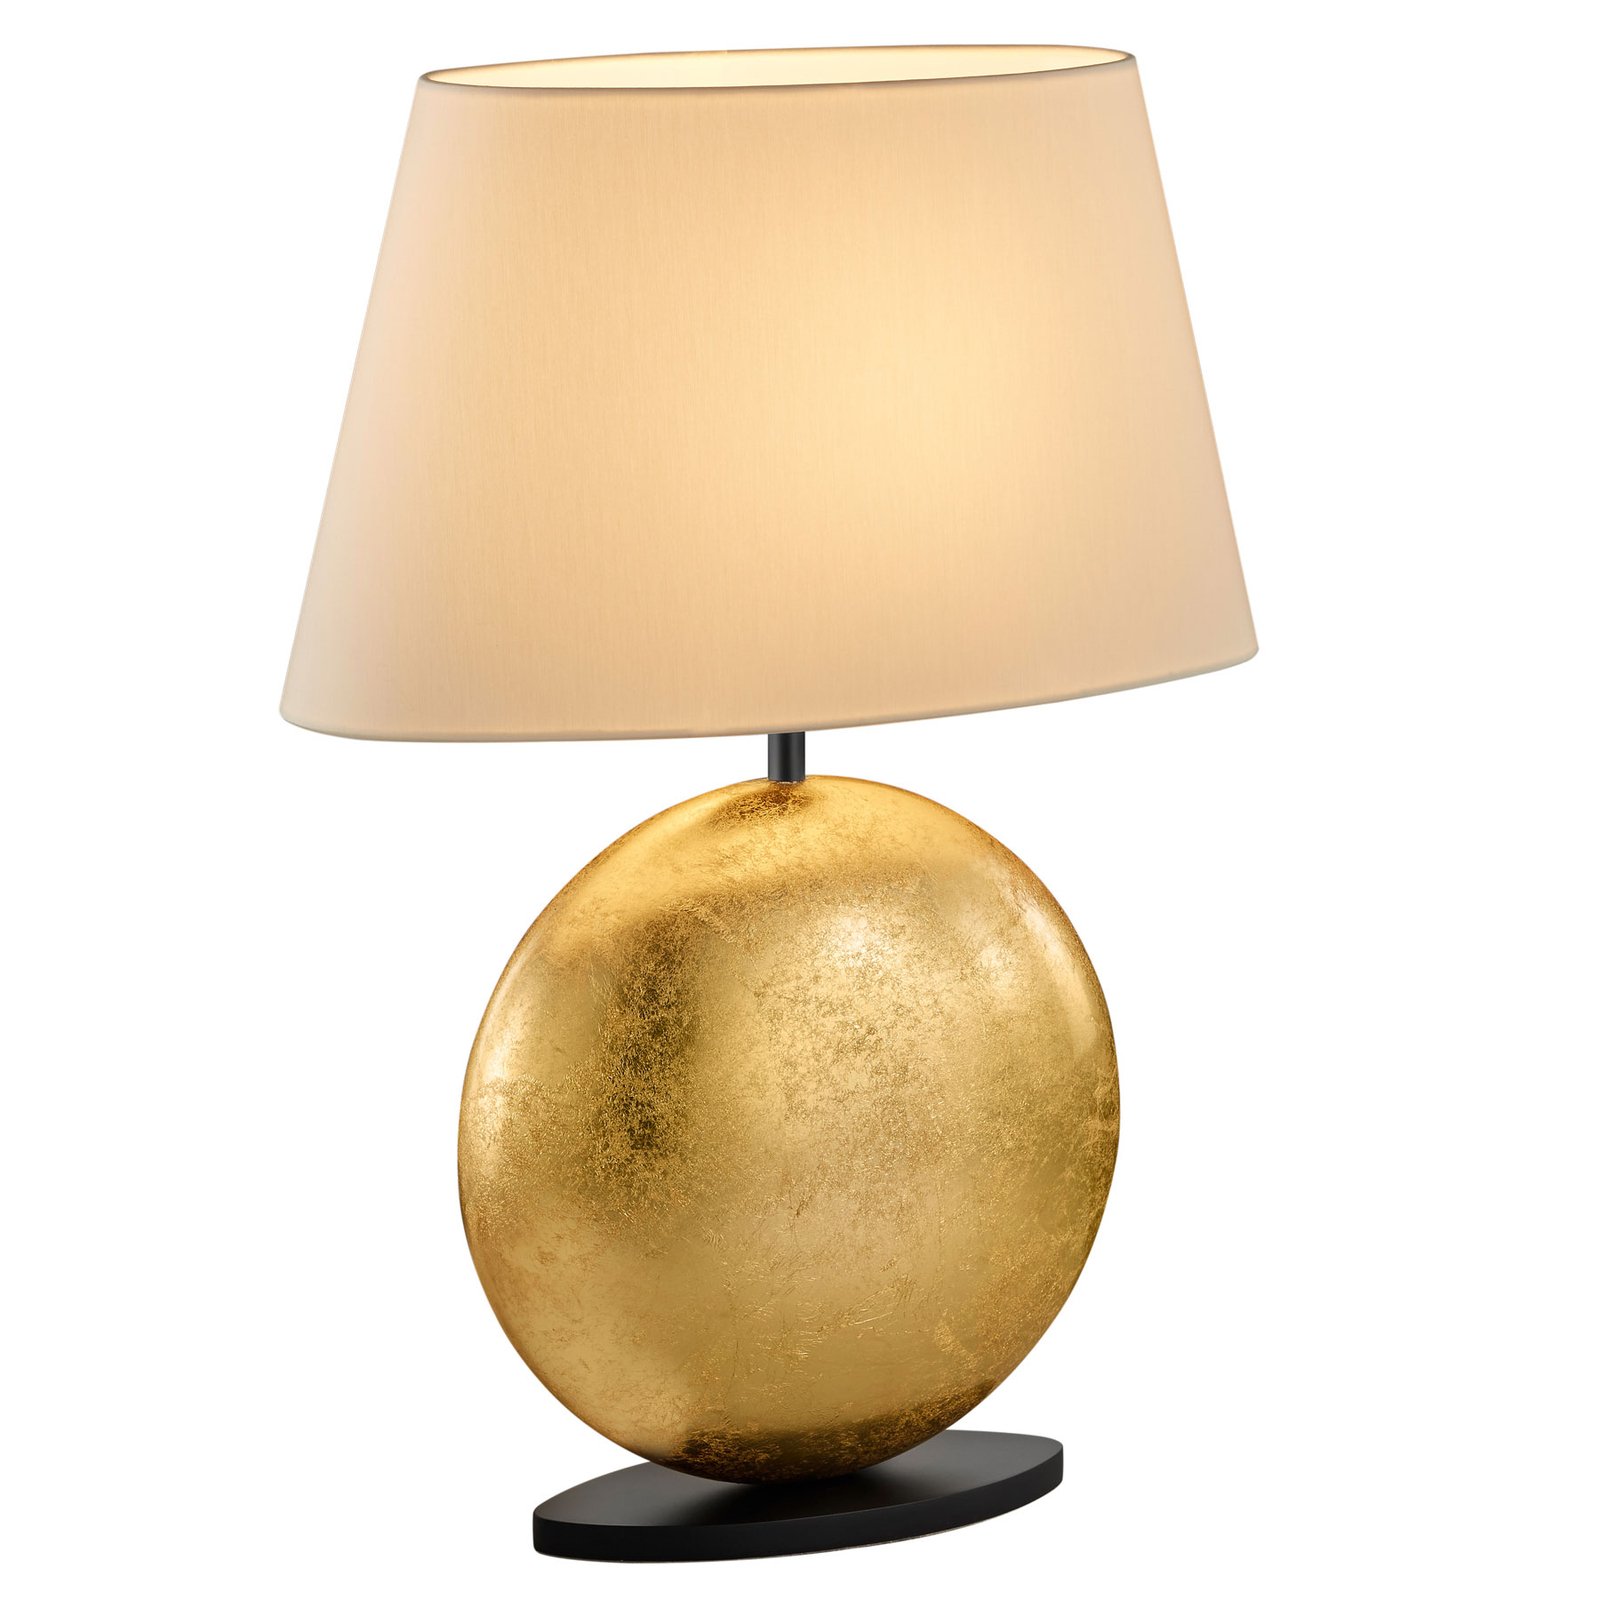 BANKAMP Mali lampa stołowa, kremowa/złota, 51cm